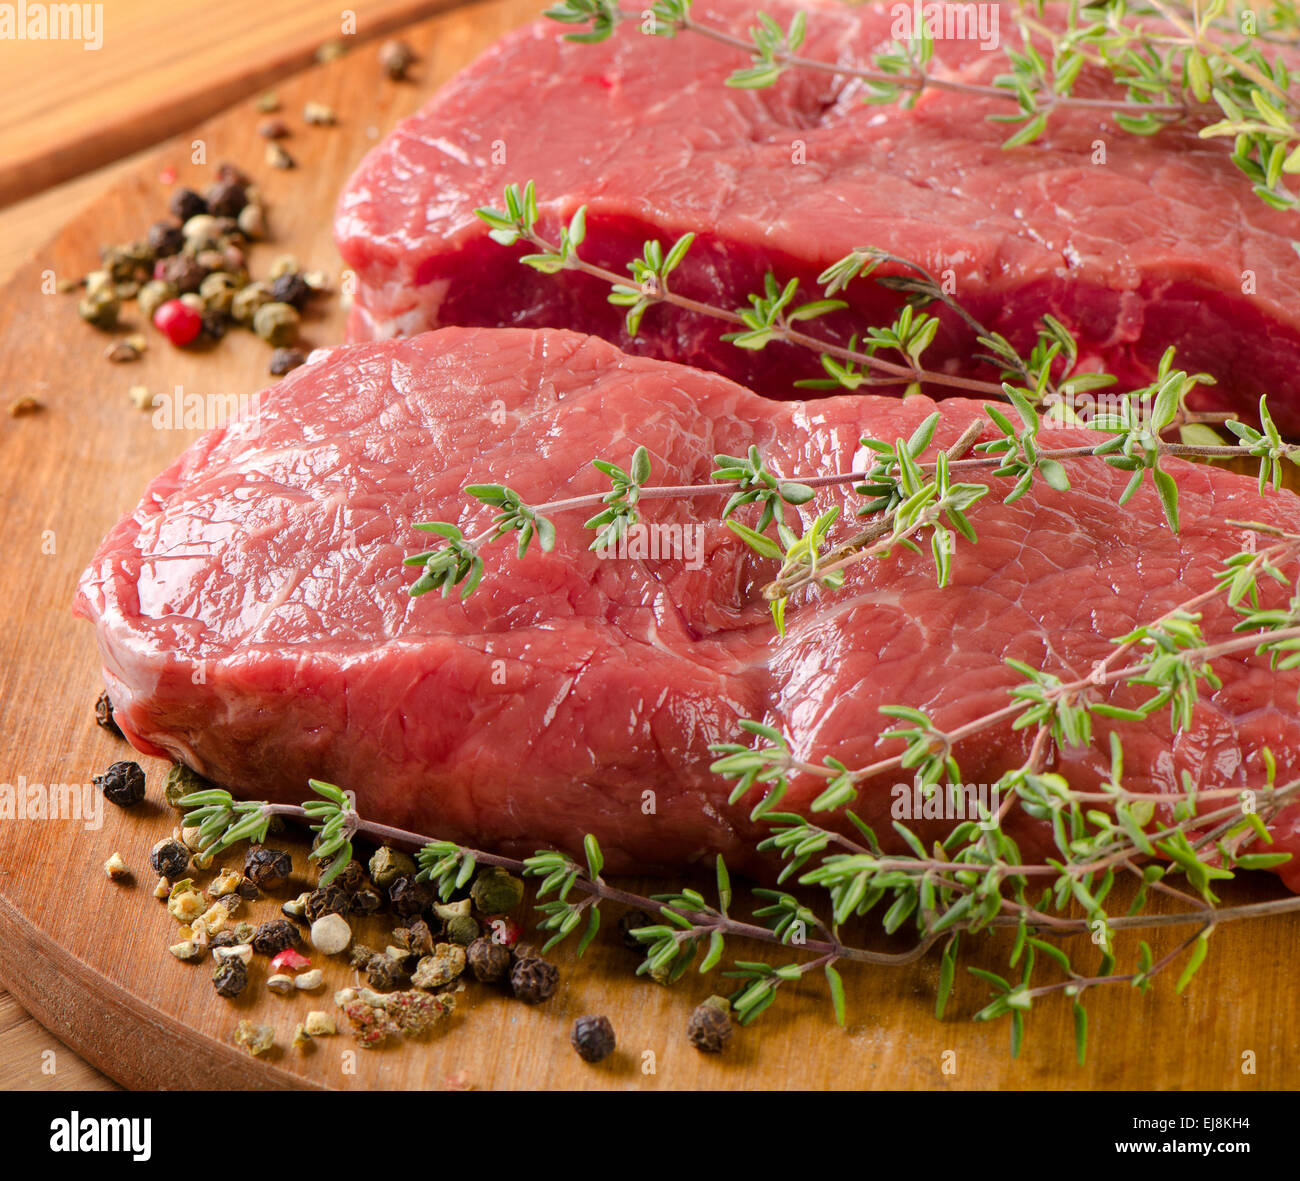 Steak de boeuf sur une planche à découper. Selective focus Banque D'Images